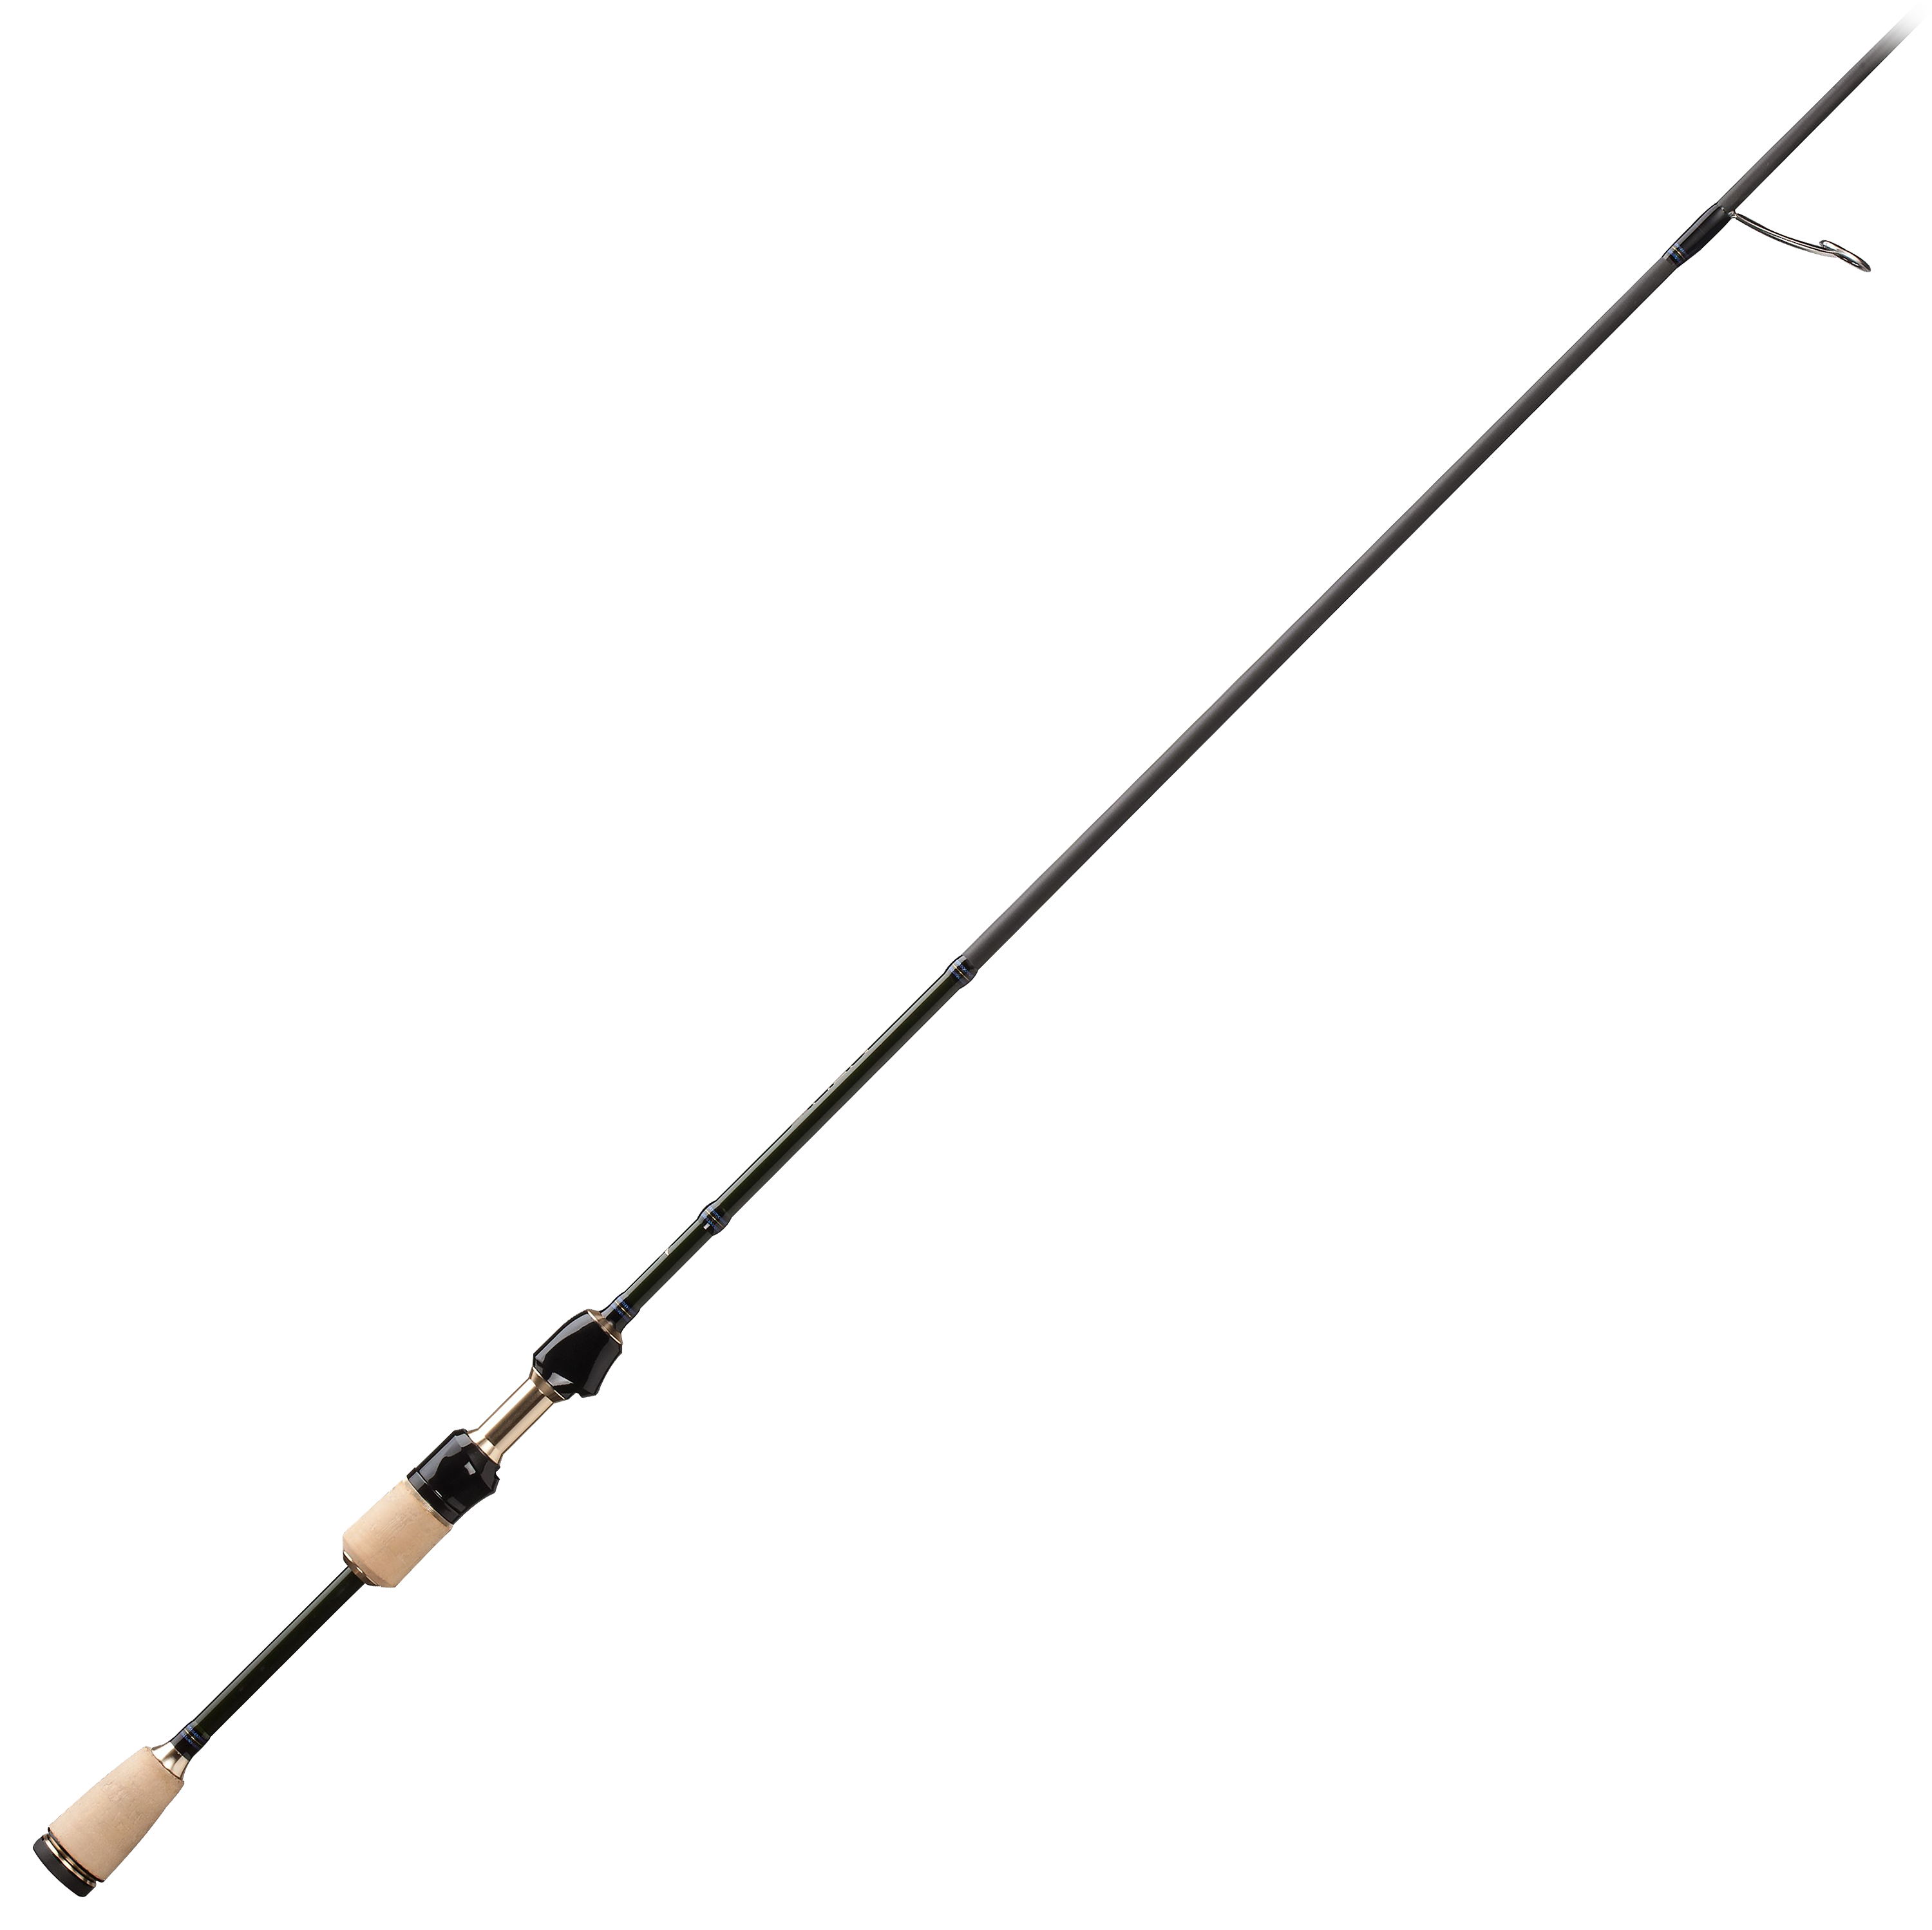 13 Fishing Omen Panfish Spinning Rod